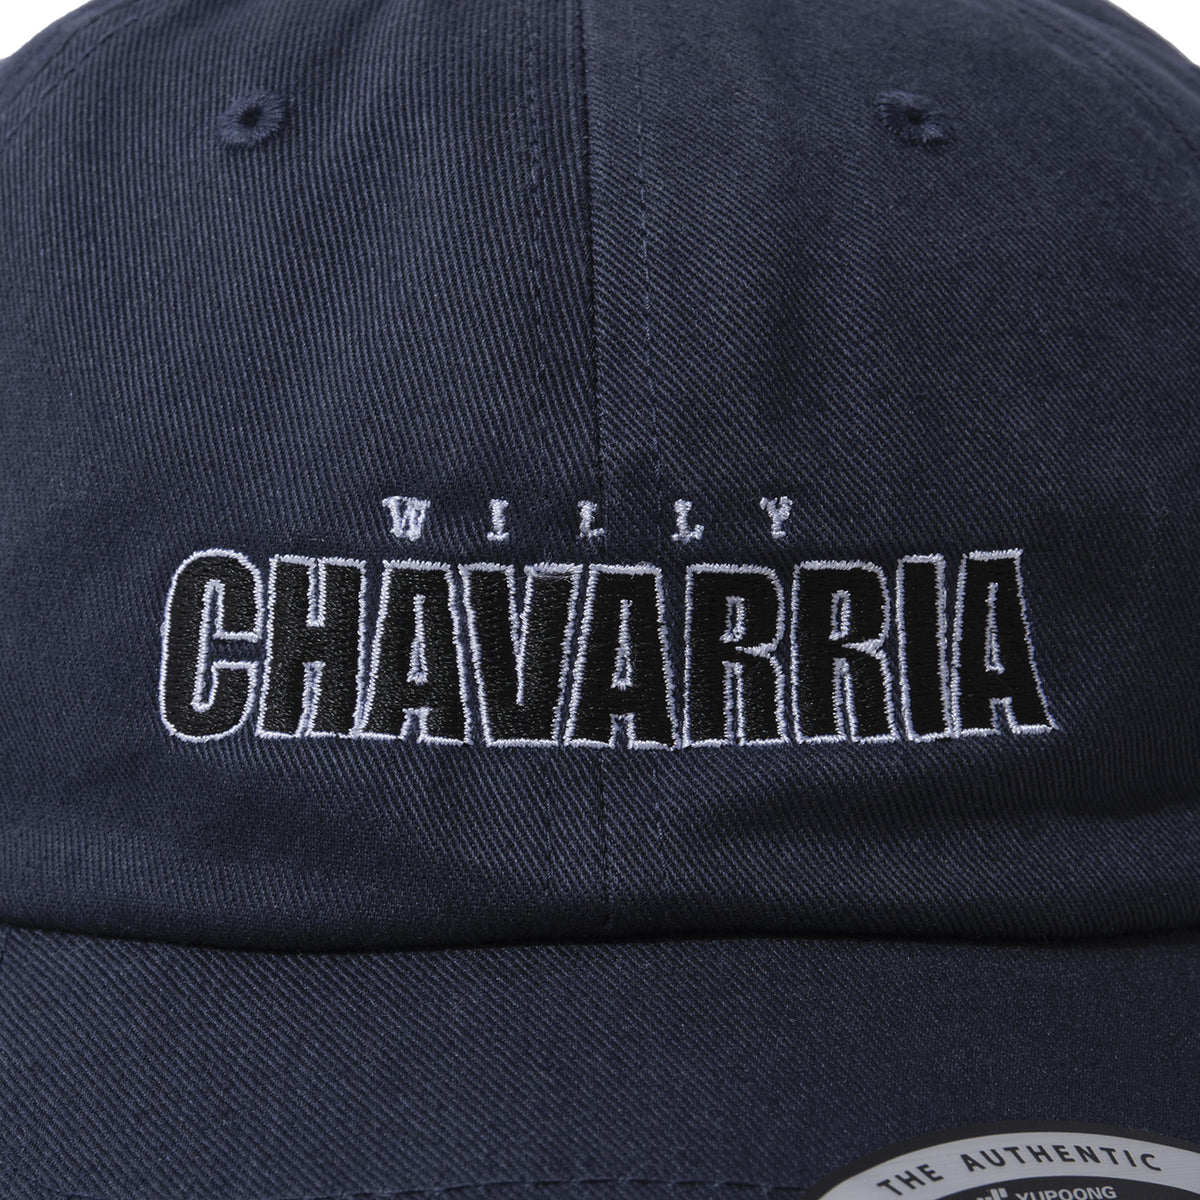 WILLY CHAVARRIA / CHAVARRIA LOGO CAP 2 NAVY